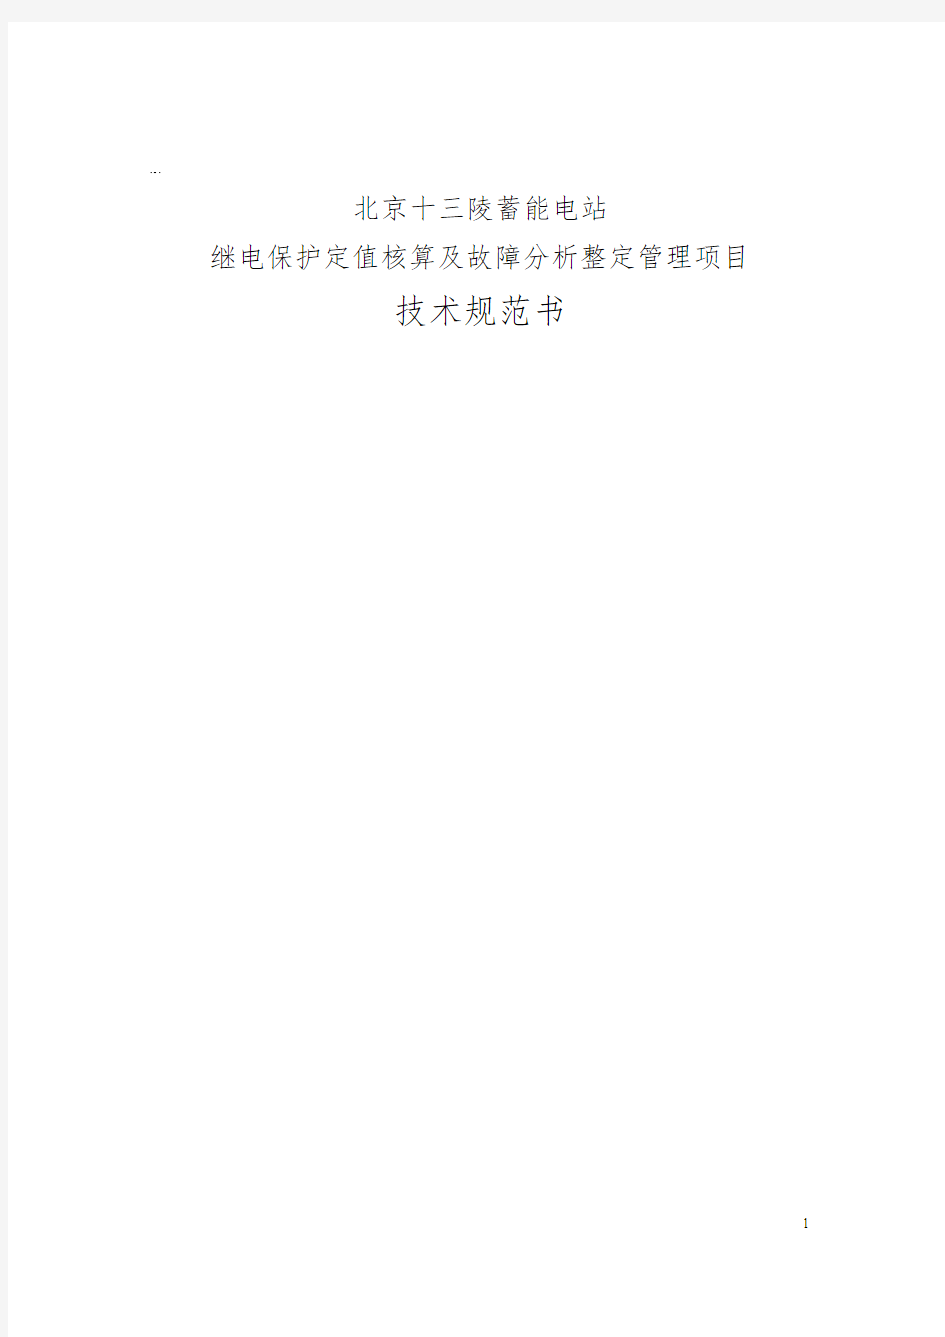 北京十三陵蓄能发电有限公司继电保护定值整定计算项目技术投标文件 (2)